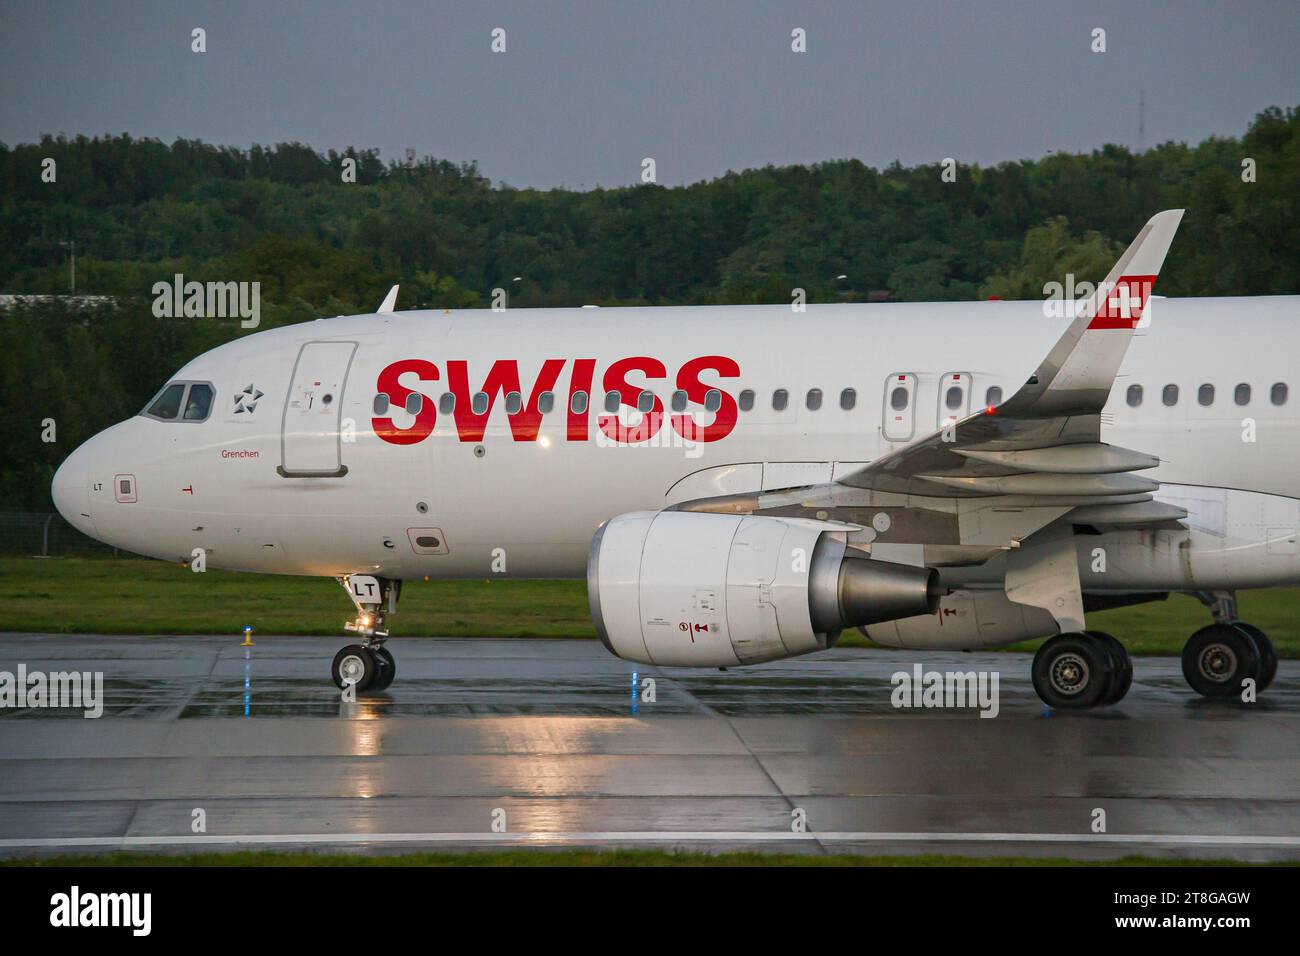 Swiss Airlines Airbus A320 se ralentiza en una pista mojada después de aterrizar en el aeropuerto de Lviv. Foto de alta calidad Foto de stock